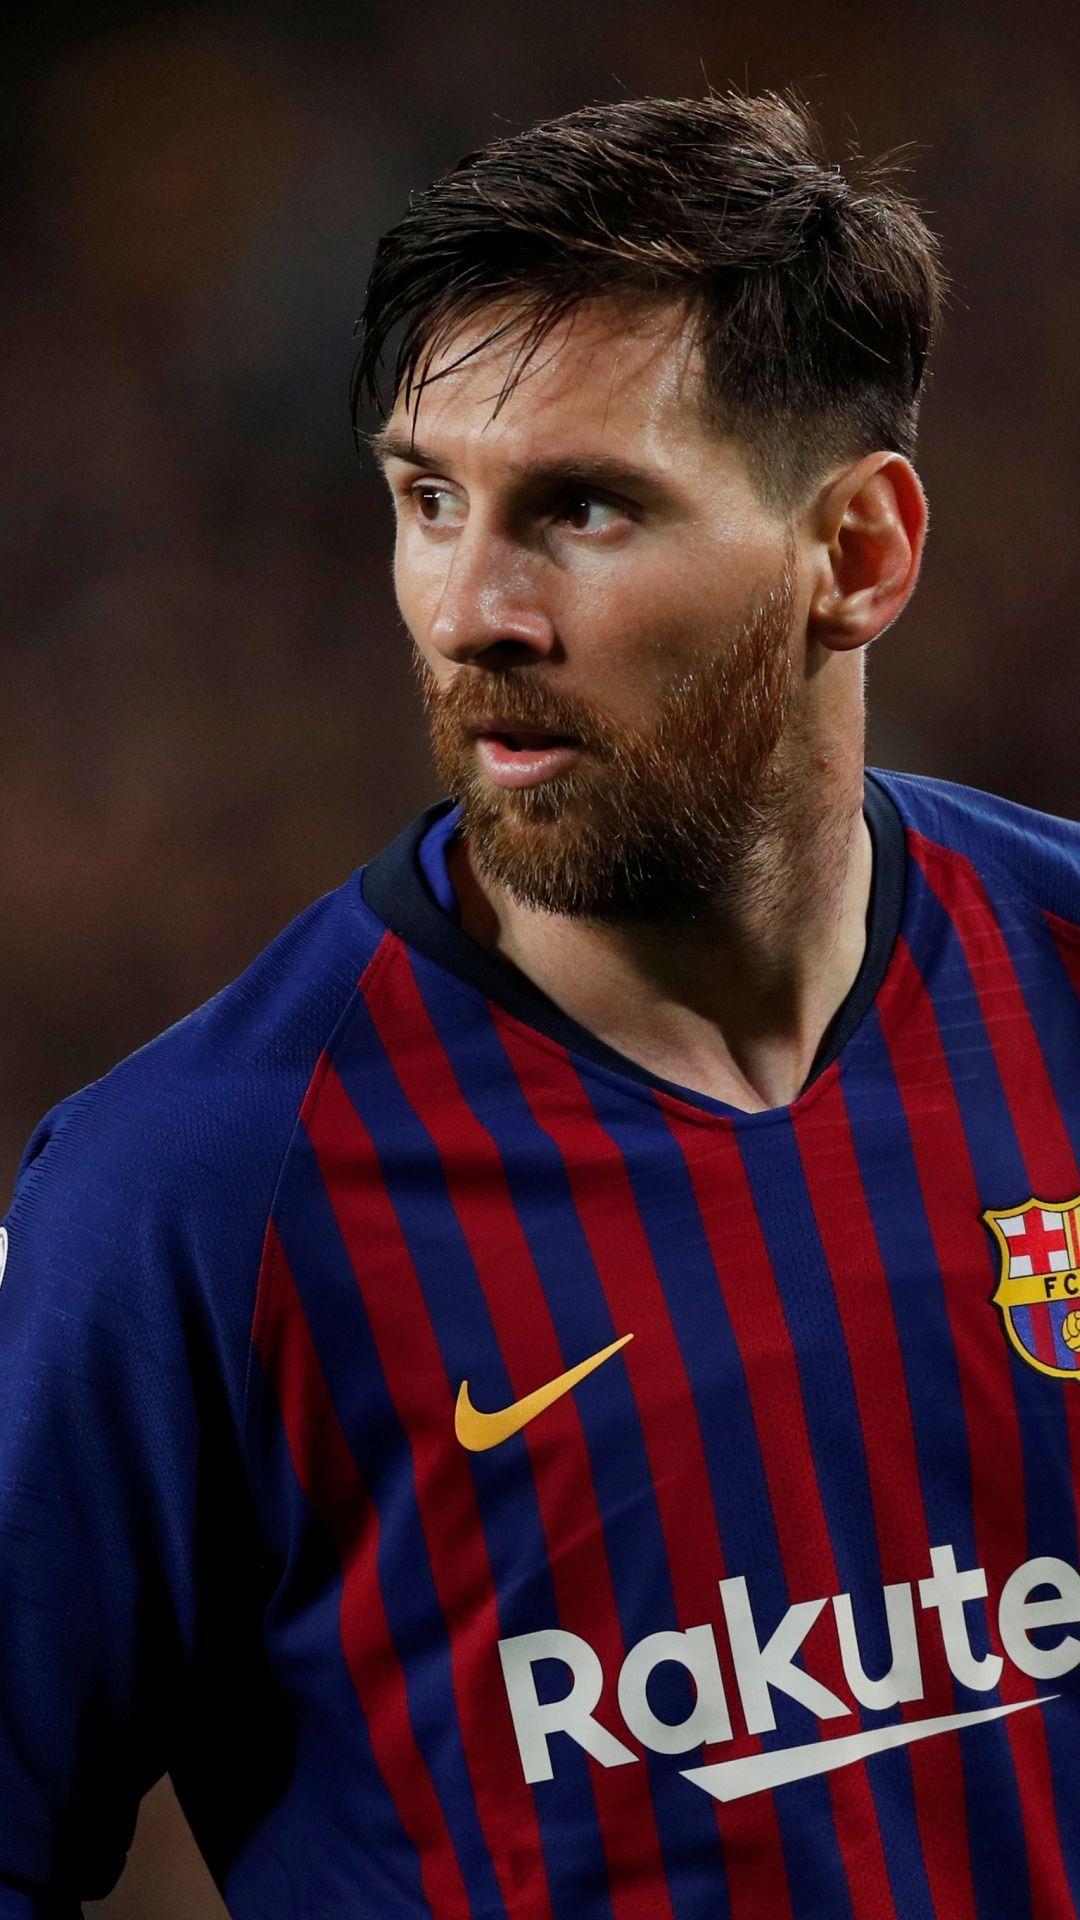 Messi 8K: Cảm nhận mọi cú đá của Messi với độ phân giải 8K đến từng centimet trên màn hình. Bạn sẽ thích thú khi xem được hình ảnh siêu nét và sống động như thể bạn đang đứng trên sân cỏ cùng Siêu sao này. Hãy dành thời gian để xem những khoảnh khắc đáng nhớ của Messi với độ phân giải chưa từng có này.